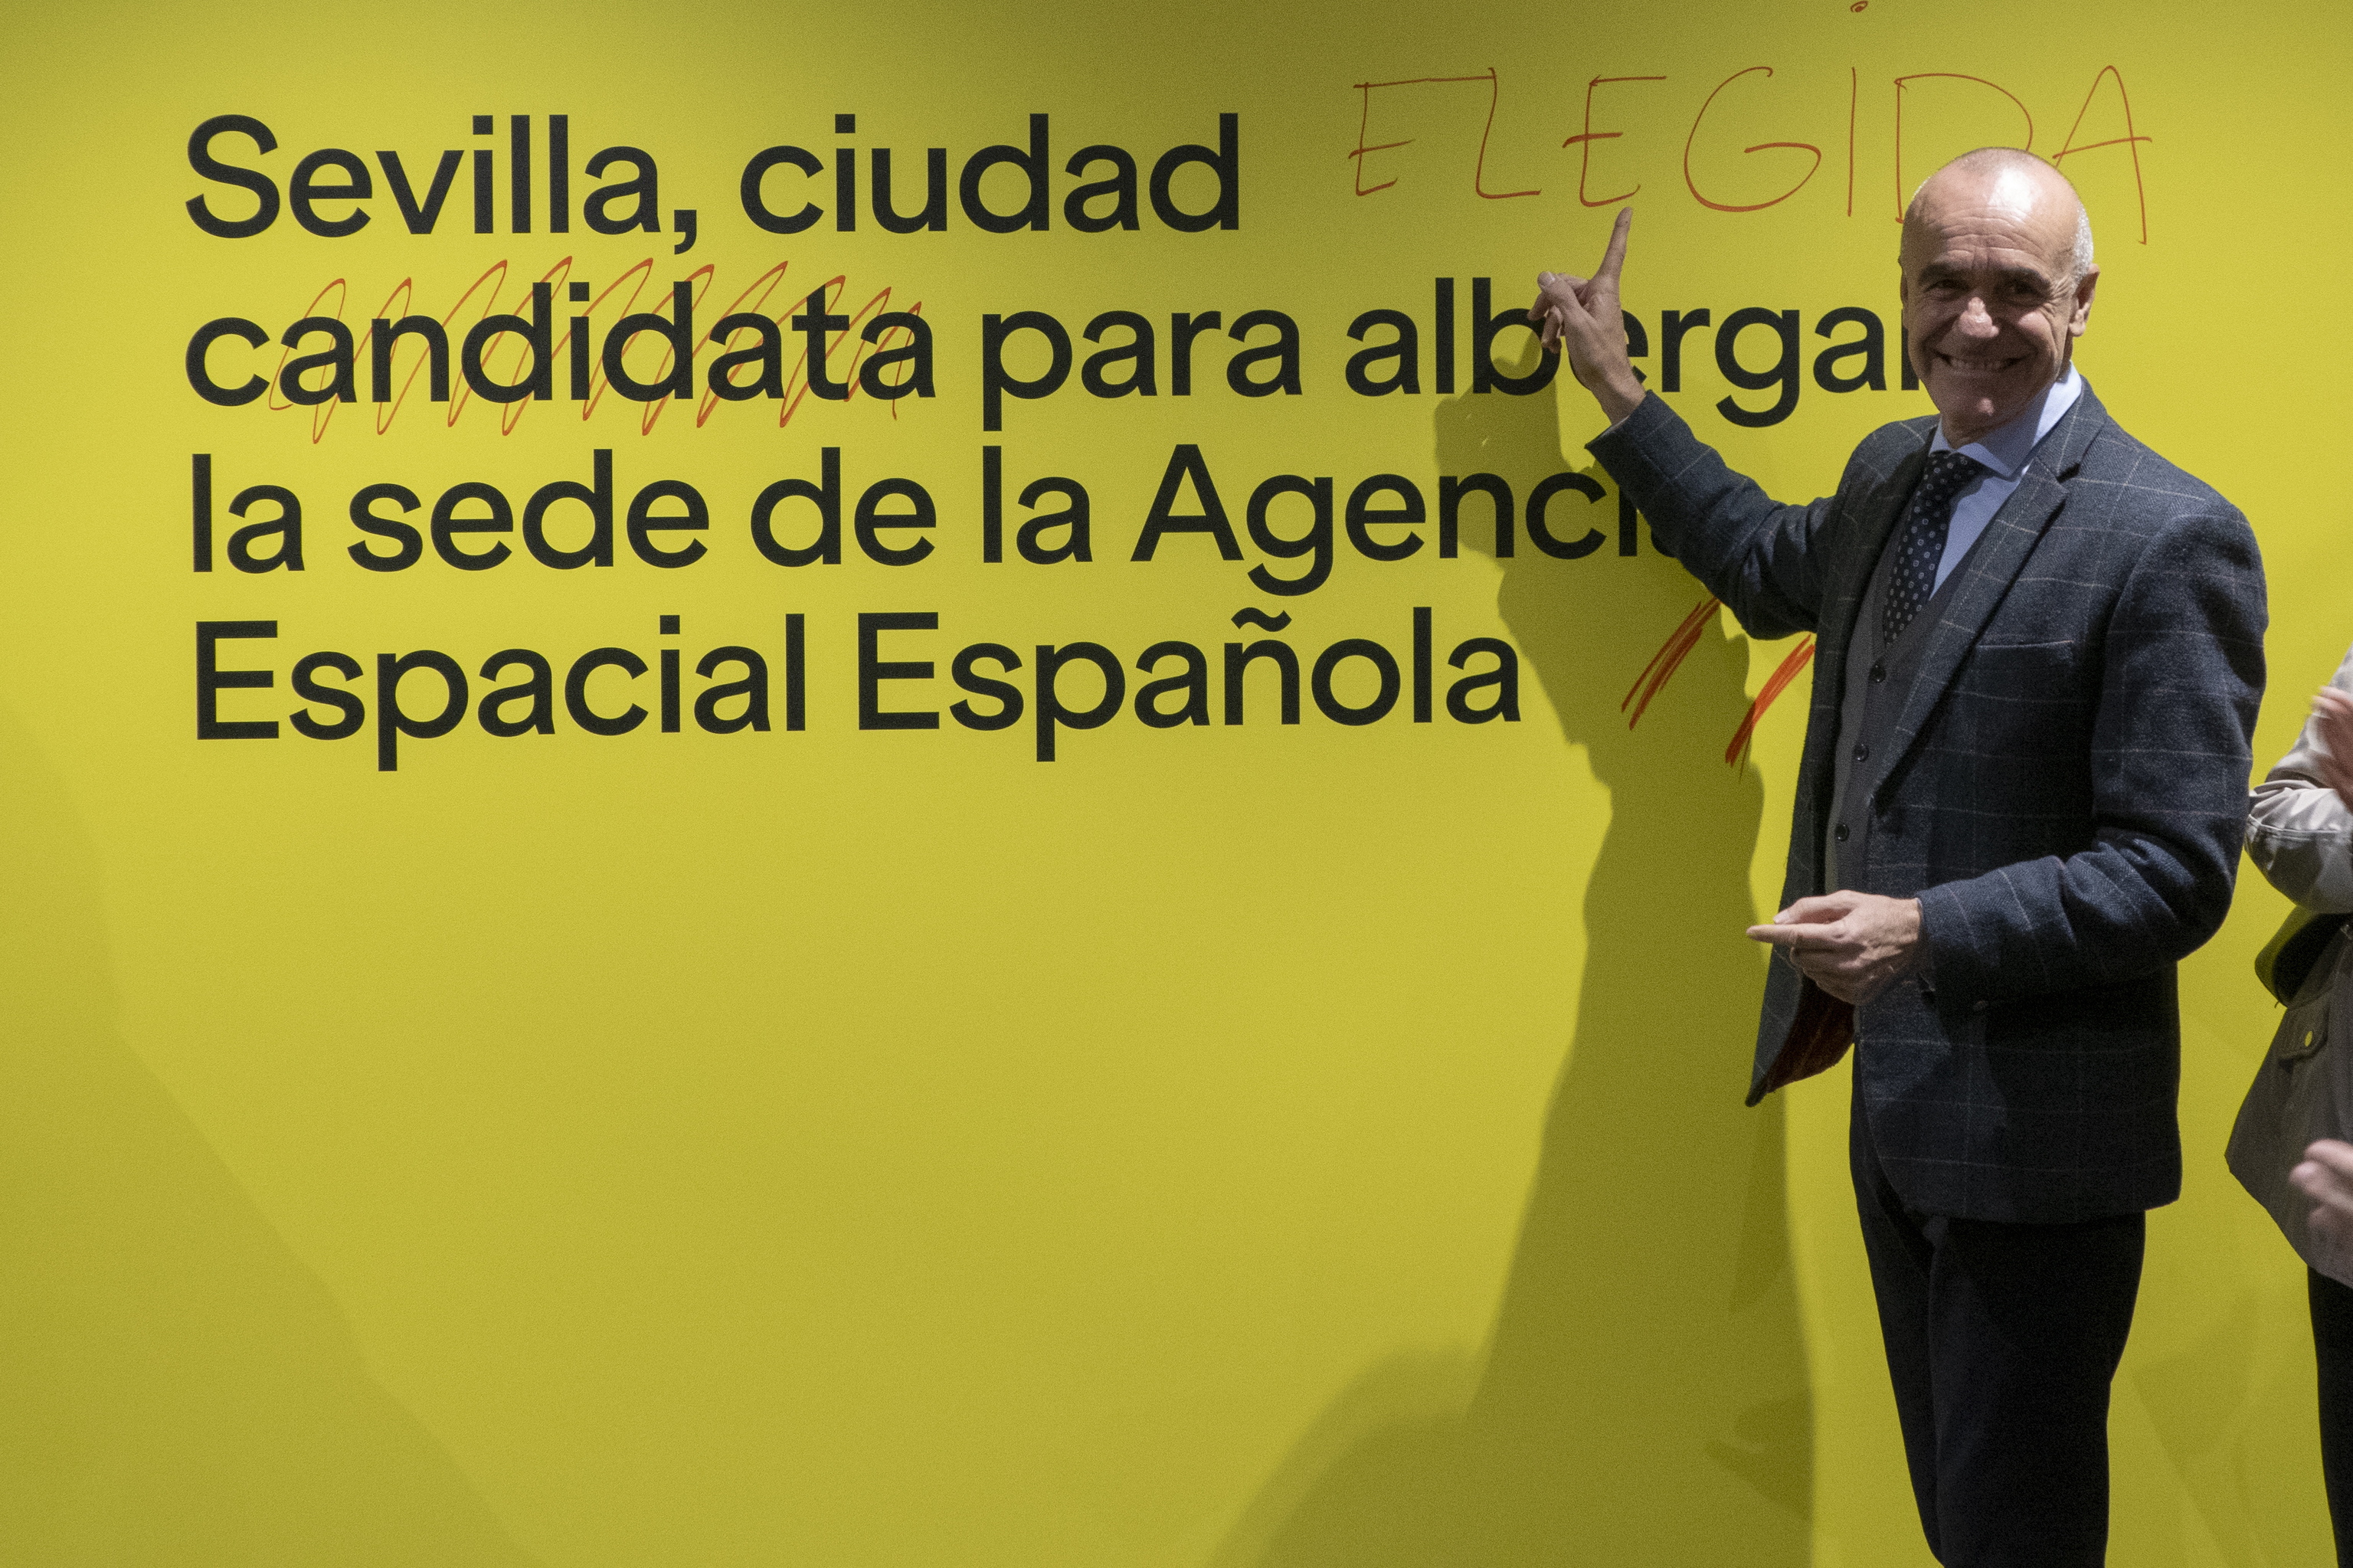 El alcade de Sevilla, el socialista Antonio Muñoz, corrige un gran cartel donde se nombraba a la ciudad como candidata a ser sede de la Agencia Espacial Española.